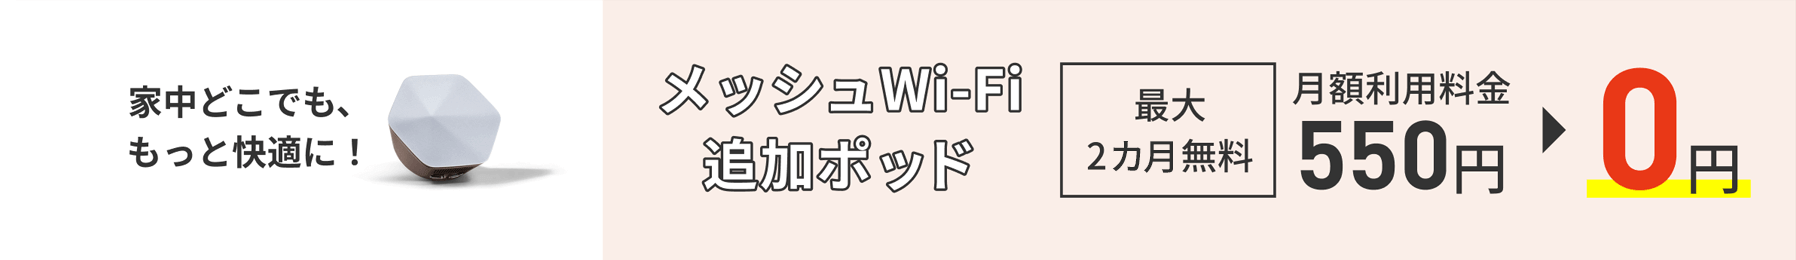 집안 어디서나 더 편안하게! 메쉬 Wi-Fi 추가 포드 최대 2개월 무료 월 이용 요금 550엔→0엔